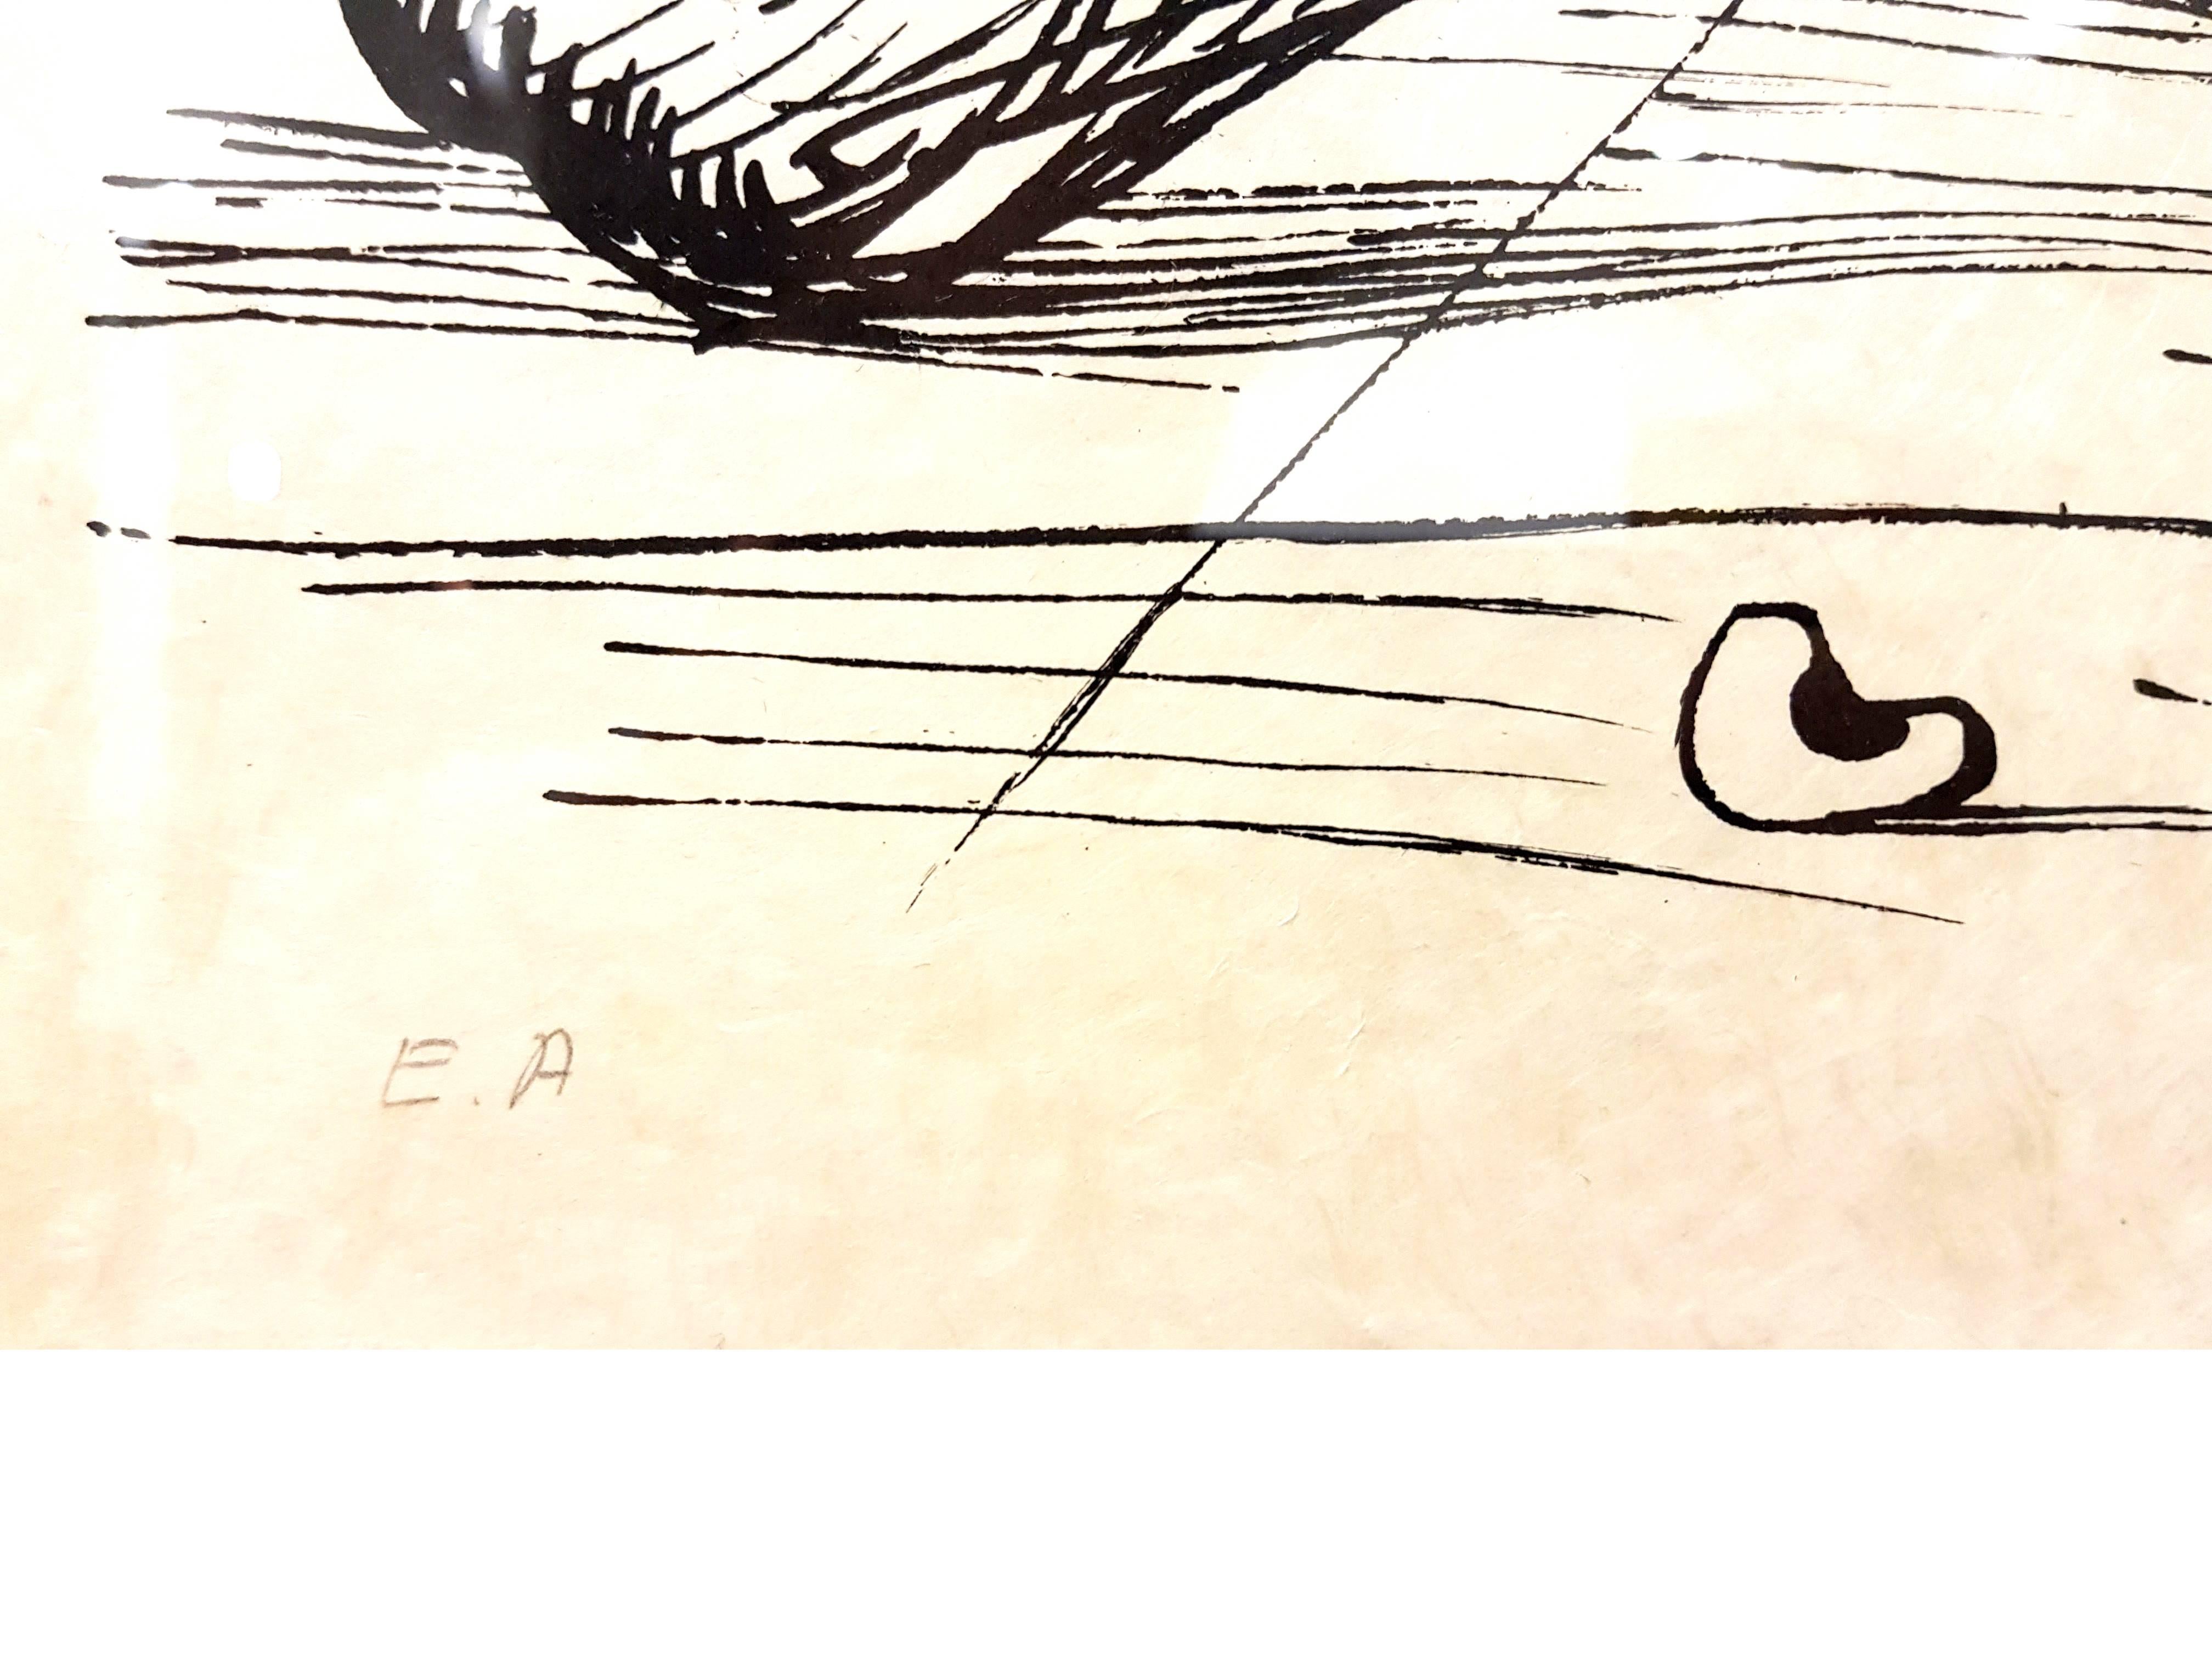 Handsignierte Lithographie von Salvador Dali
Diese Ausgabe ist auf Japanpapier
Titel: Pantagruels Träume
Mit Bleistift signiert von Salvador Dali
Abmessungen: 76 x 56 cm
Auflage: EA
1973
Referenzen: Field 73-7 (S. 173-174) / Michler & Lopsinger